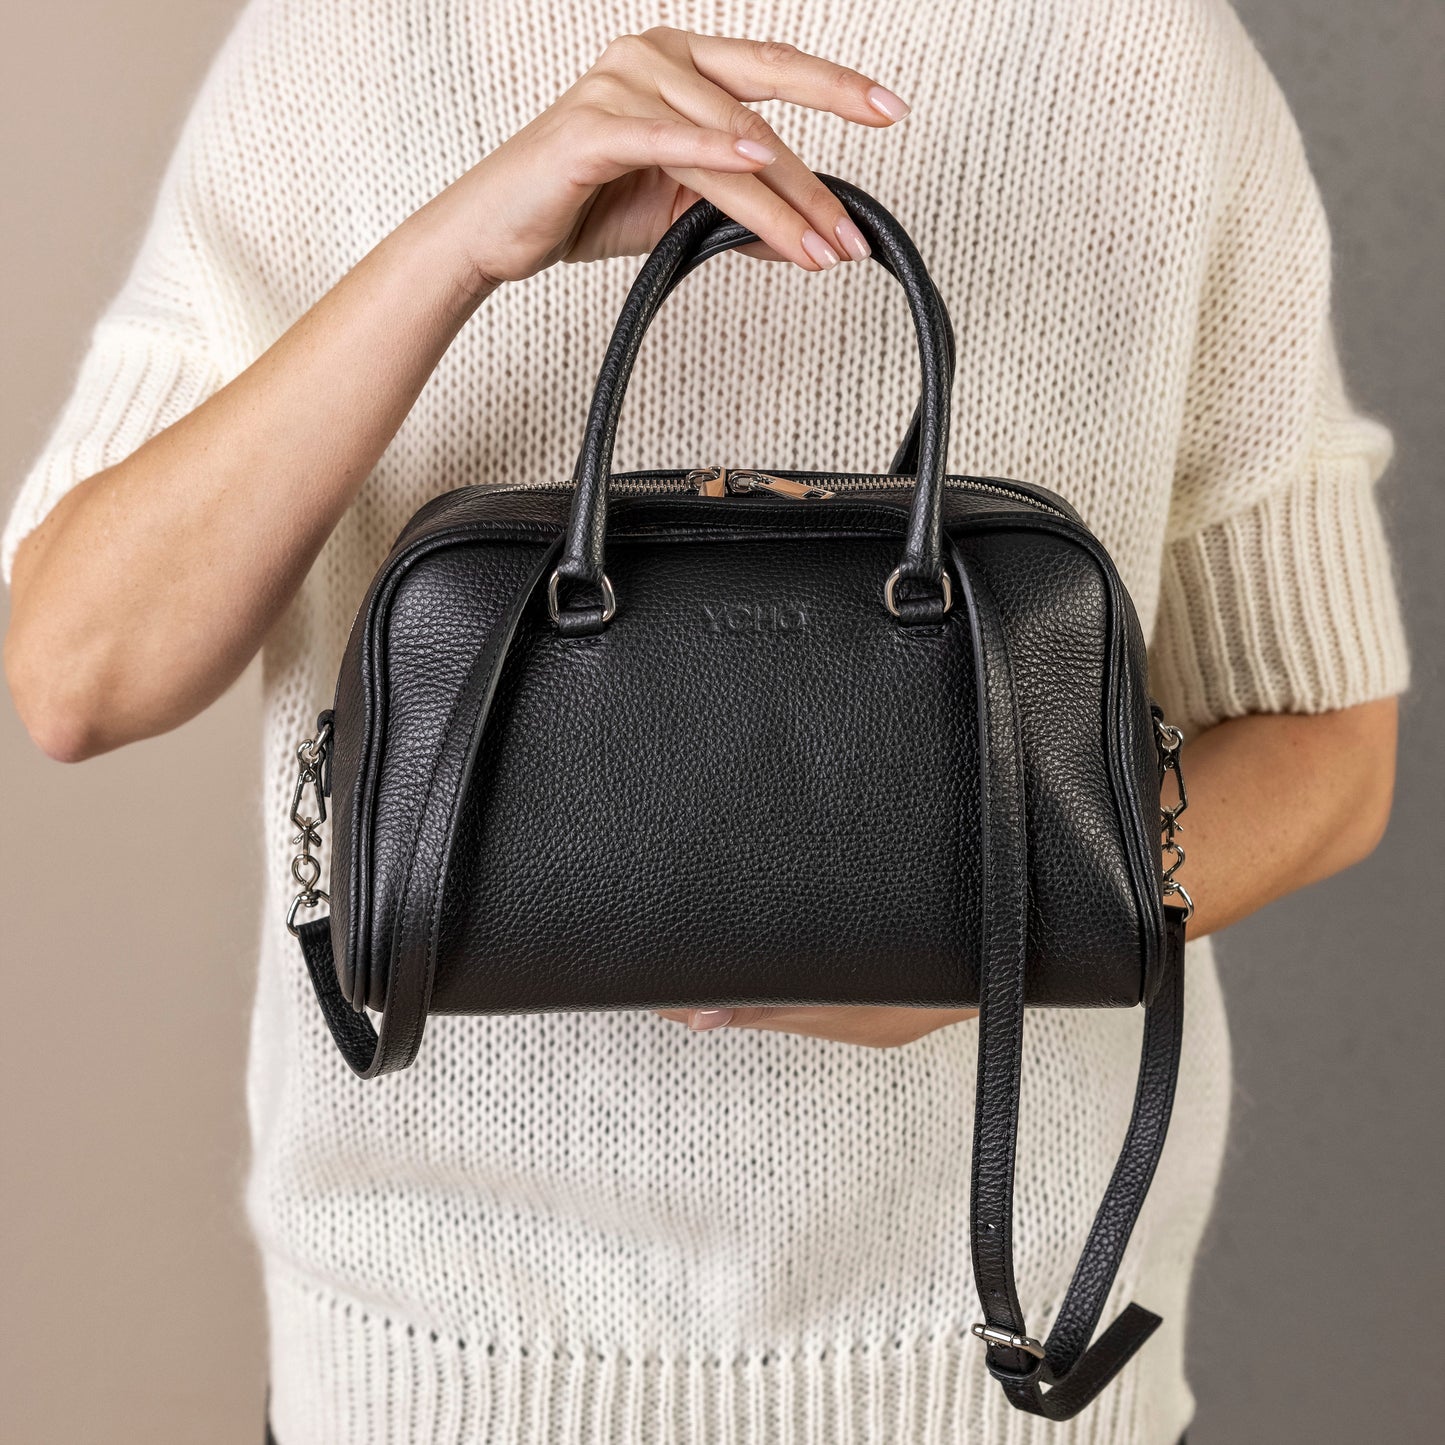 Genuine leather handbag Olivija